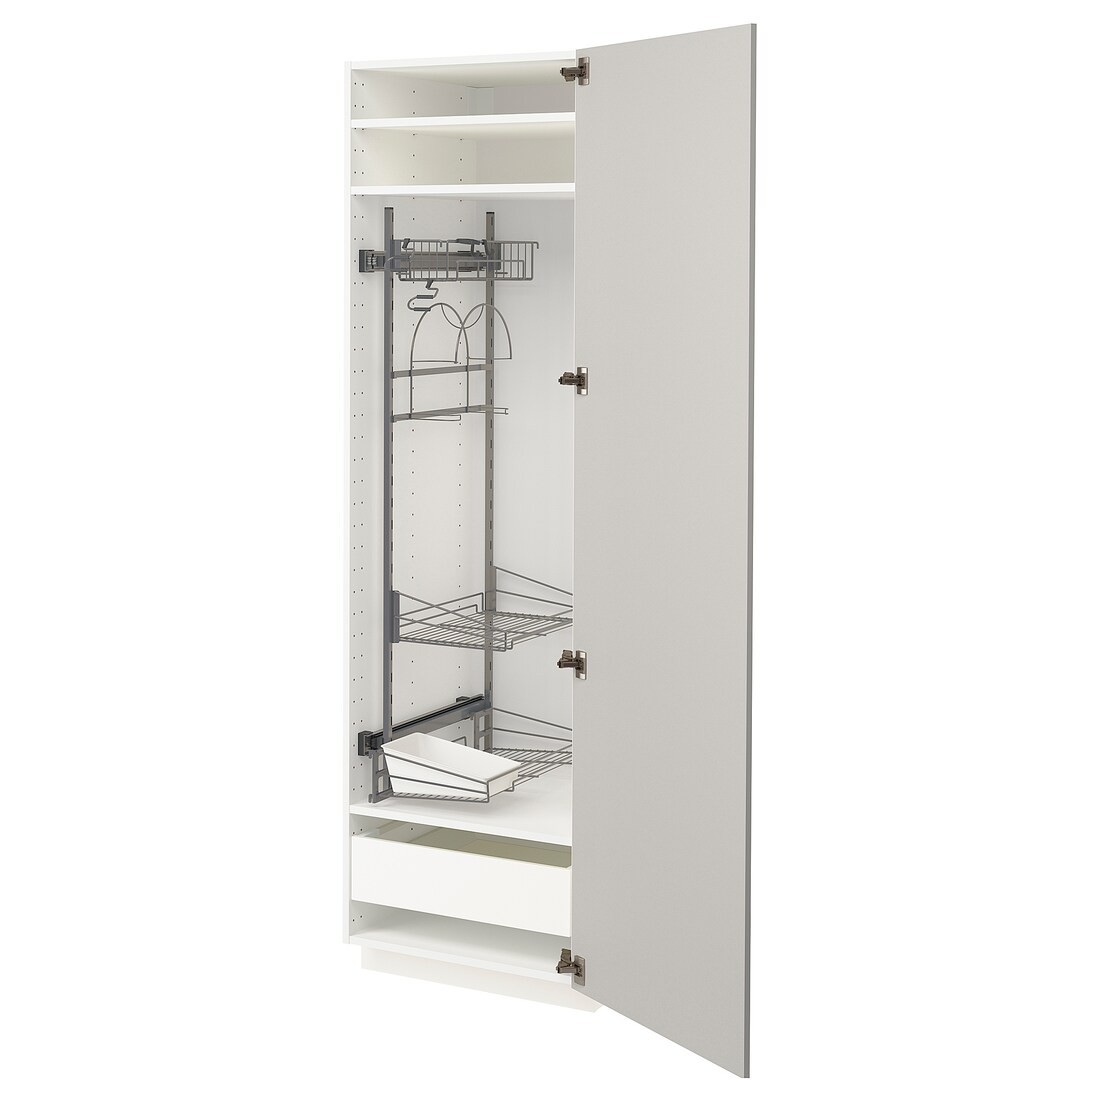 METOD МЕТОД / MAXIMERA МАКСИМЕРА Высокий шкаф с отделением для аксессуаров для уборки, белый / Ringhult светло-серый, 60x60x200 см